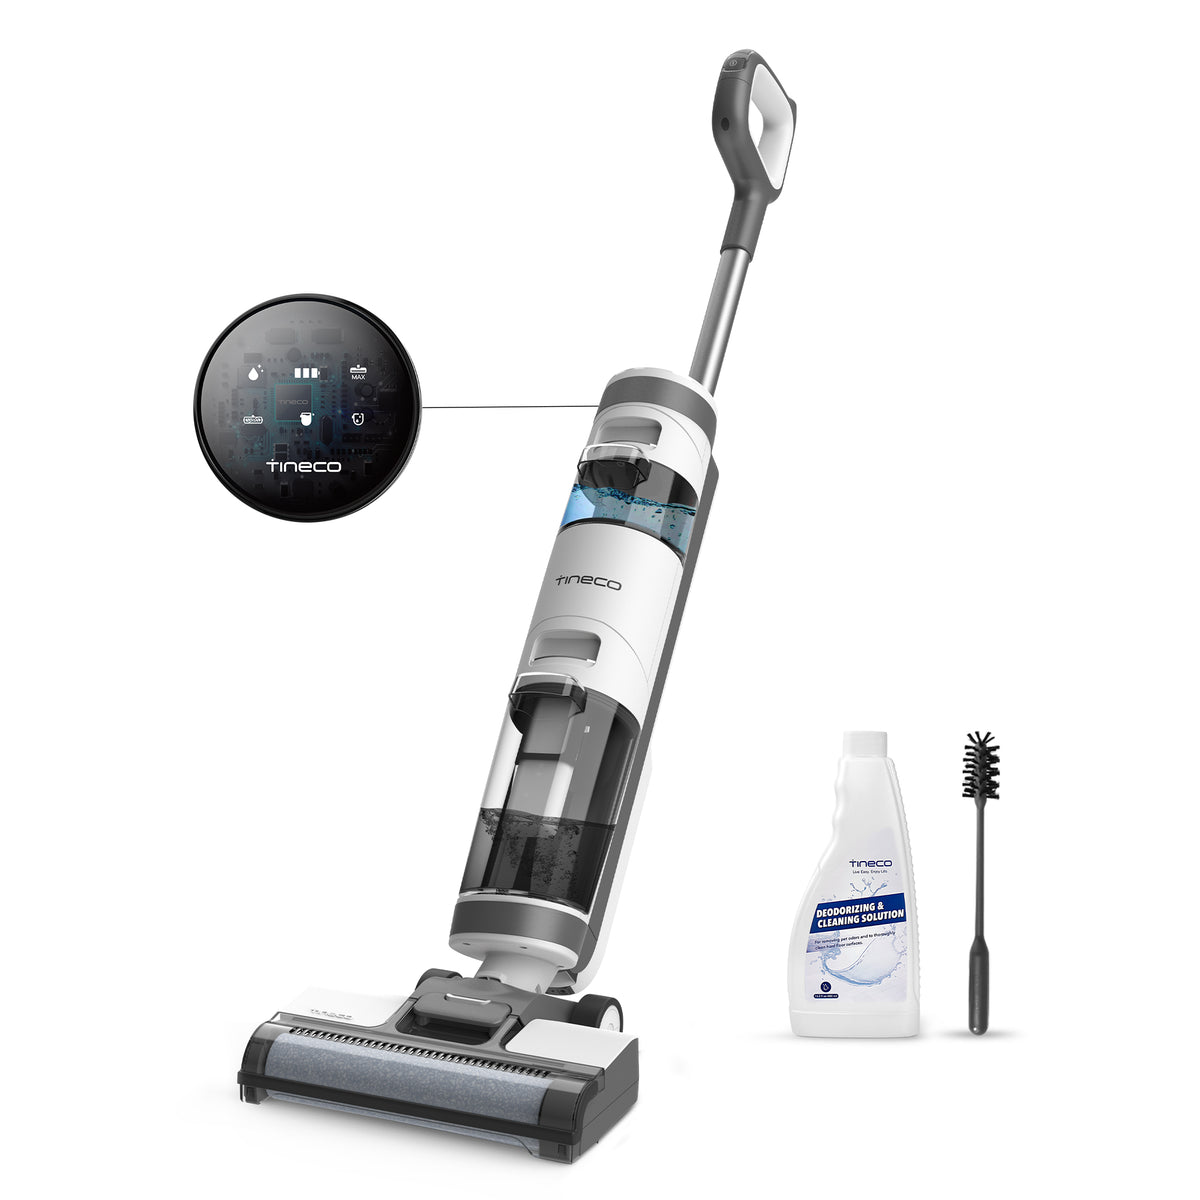 Tineco iFloor 3 Breeze Wet/Dry Hard Floor Cordless Vacuum Cleaner